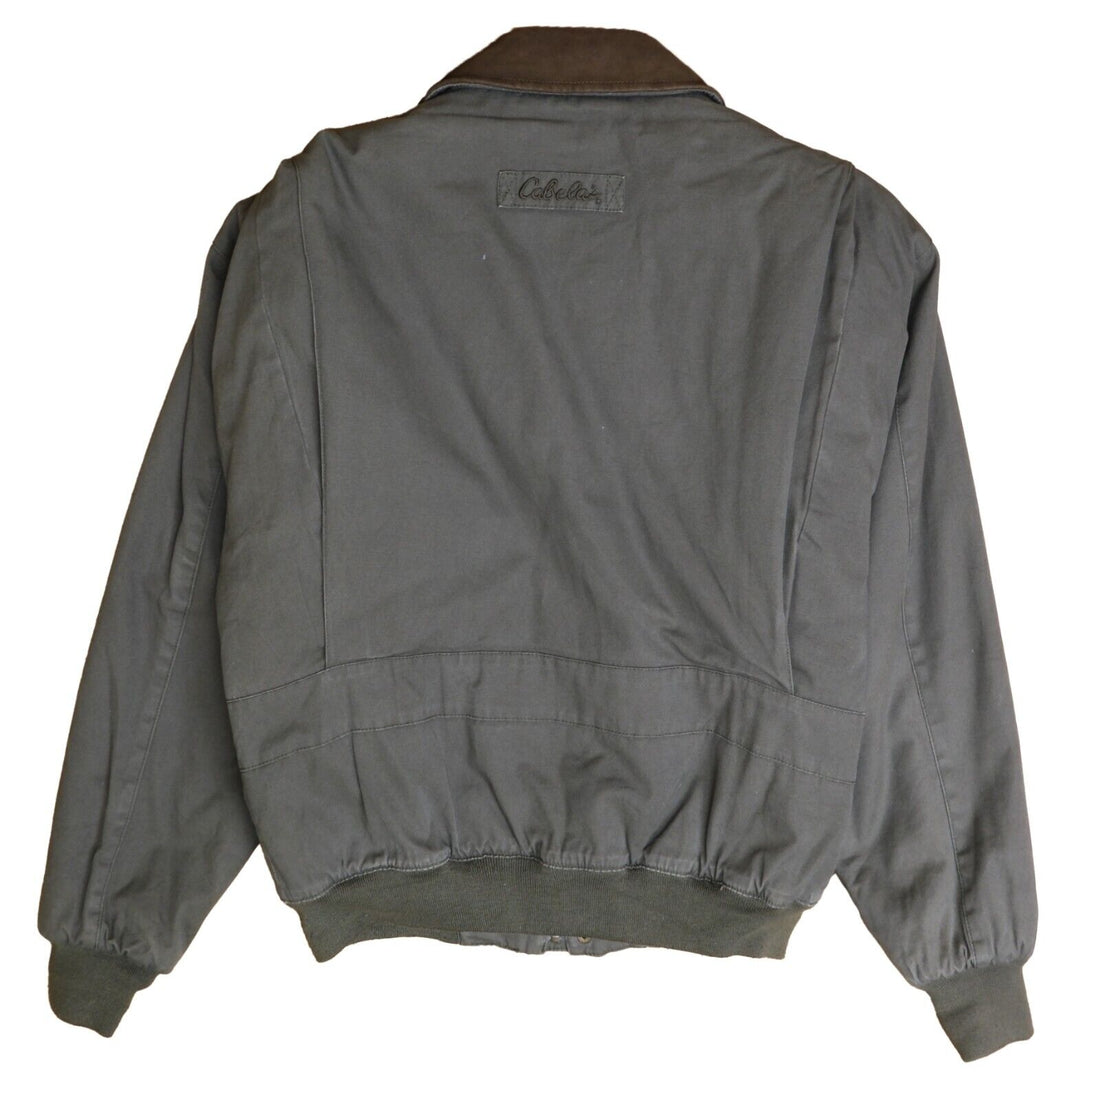 Vintage Cabela's Work Jacket Size Medium Brown